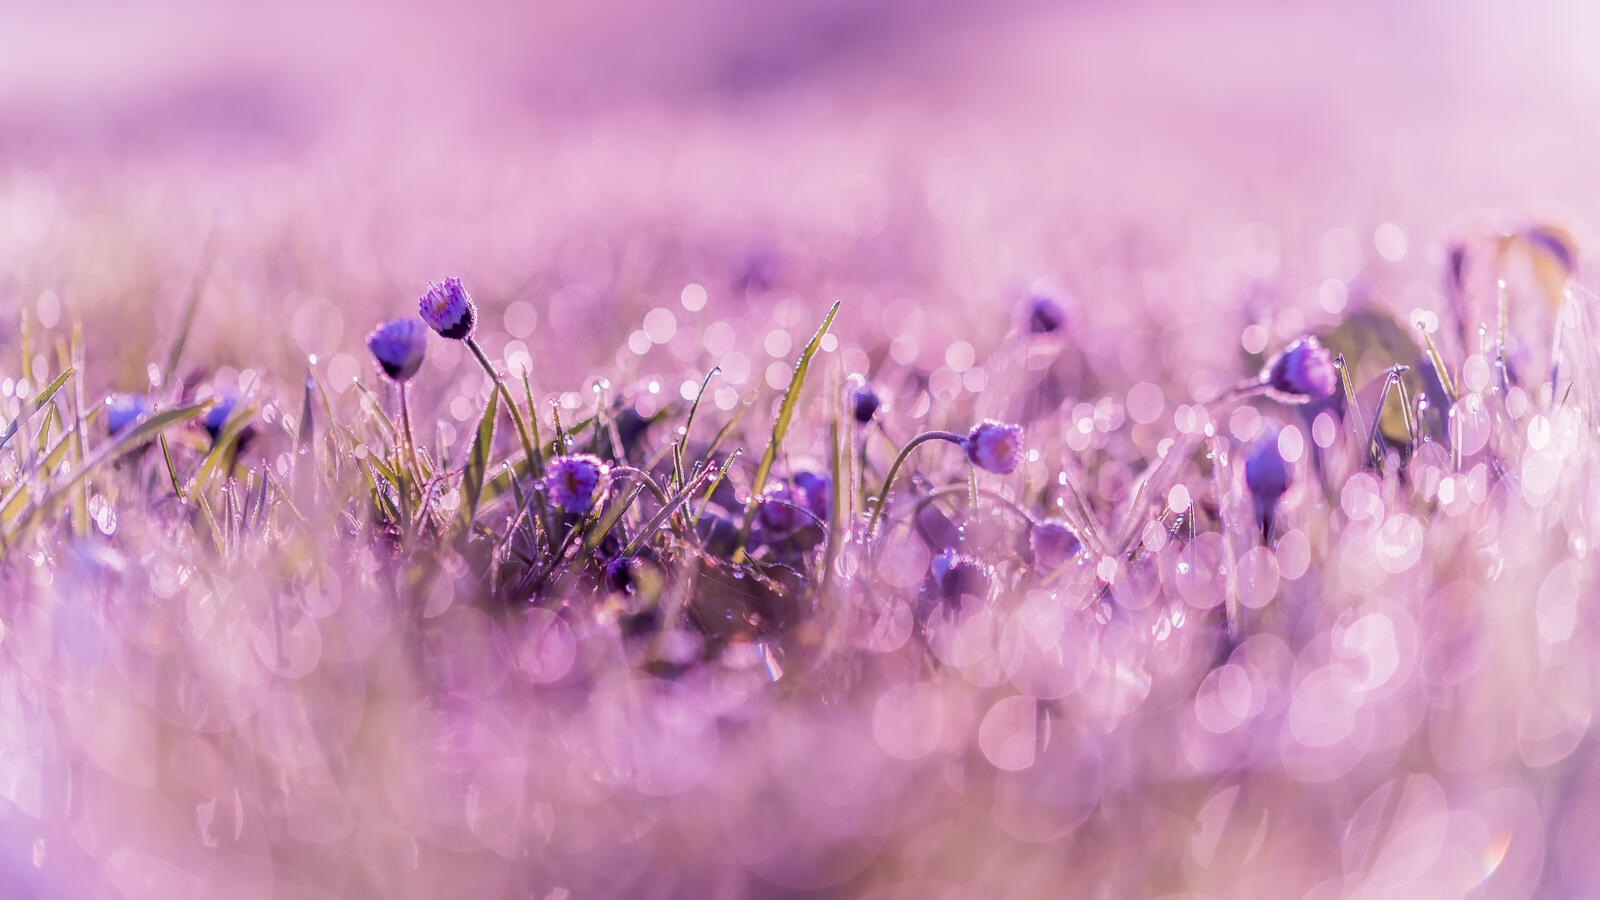 Бесплатное фото Кустарник с маленькими фиолетовыми цветами с капельками росы на лепестках